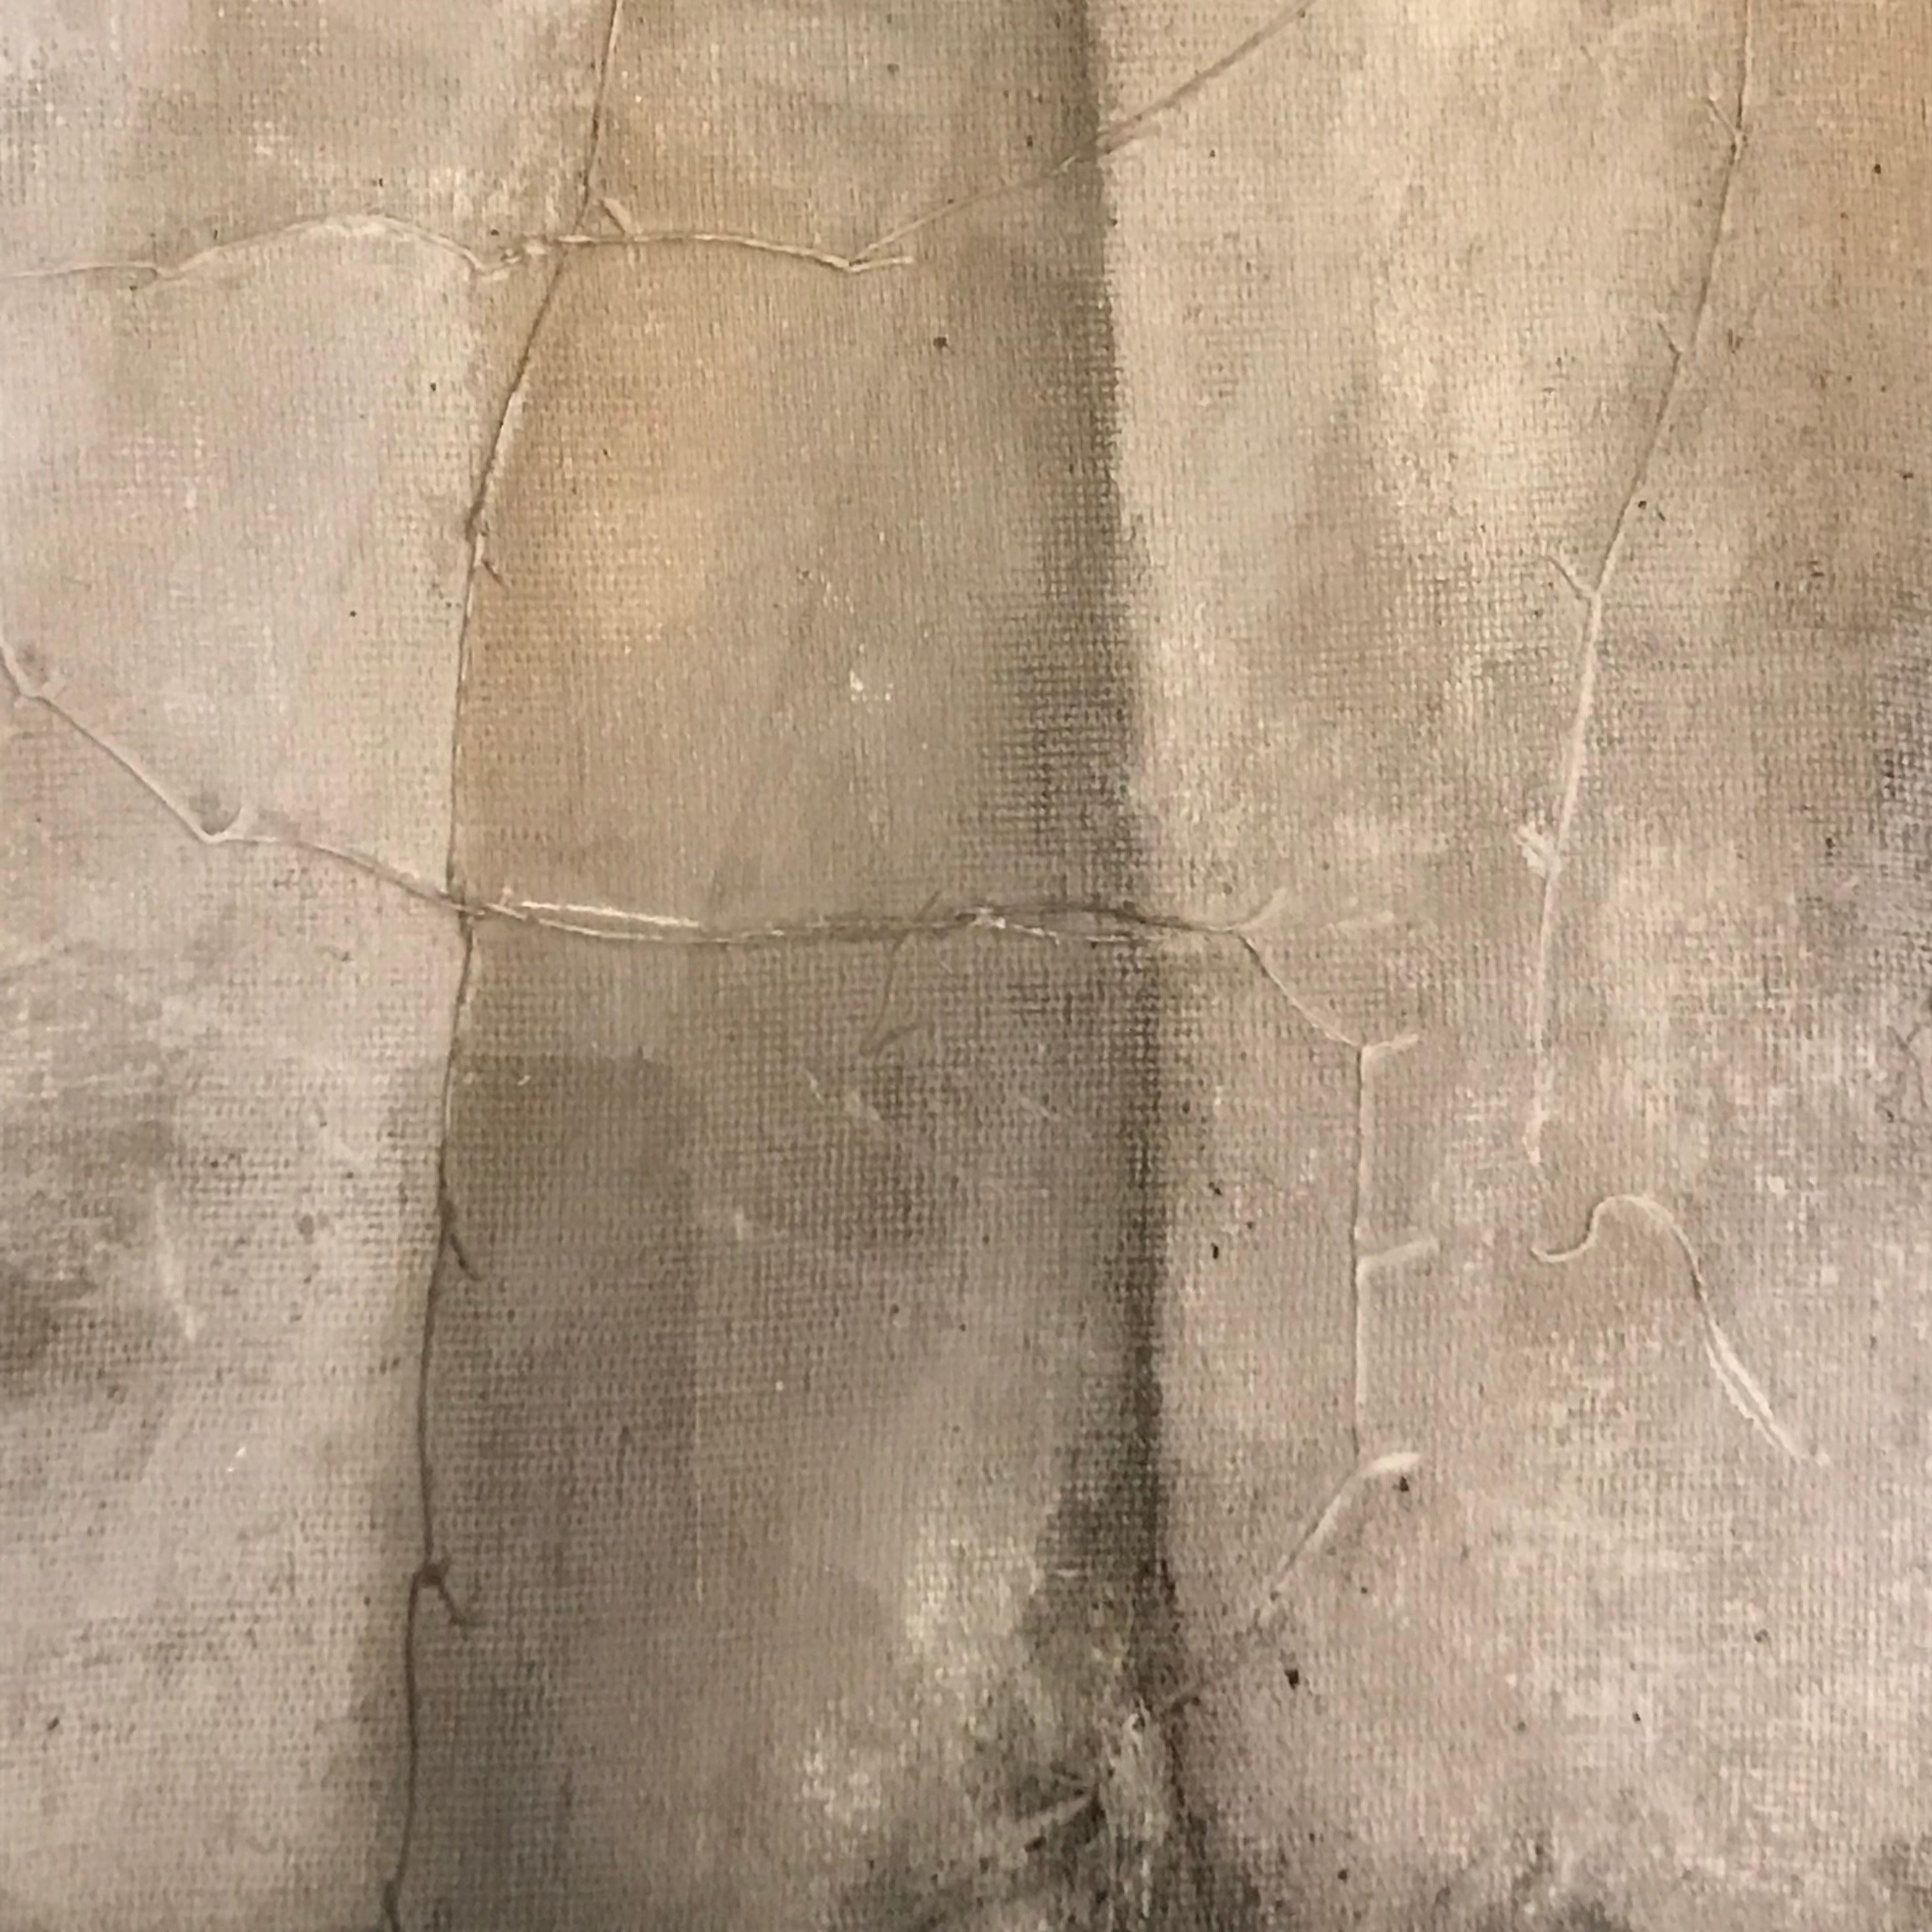 Zeitgenössische abstrakte Malerei der belgischen Künstlerin Diane Petry.
Das Acrylgemälde ist in Grautönen gehalten.
Die Künstlerin gestaltet ihre eigene Leinwand mit gemischten Medien.
Archiviert auf Museumskarton in einem eloxierten schwarzen